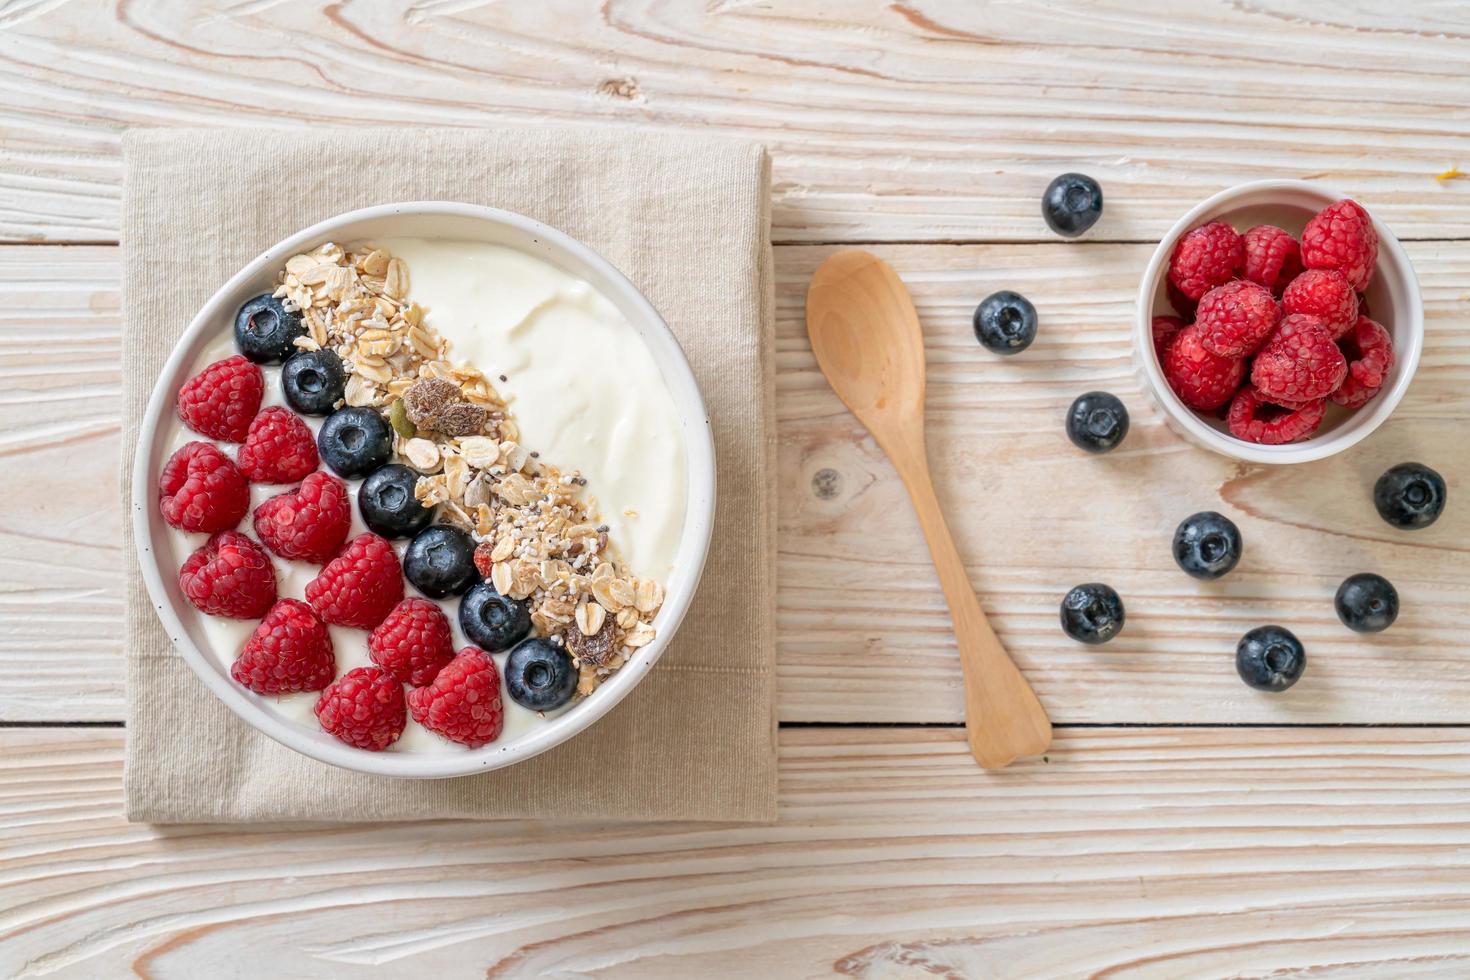 hemlagad yoghurtskål med hallon, blåbär och granola - hälsosam matstil foto